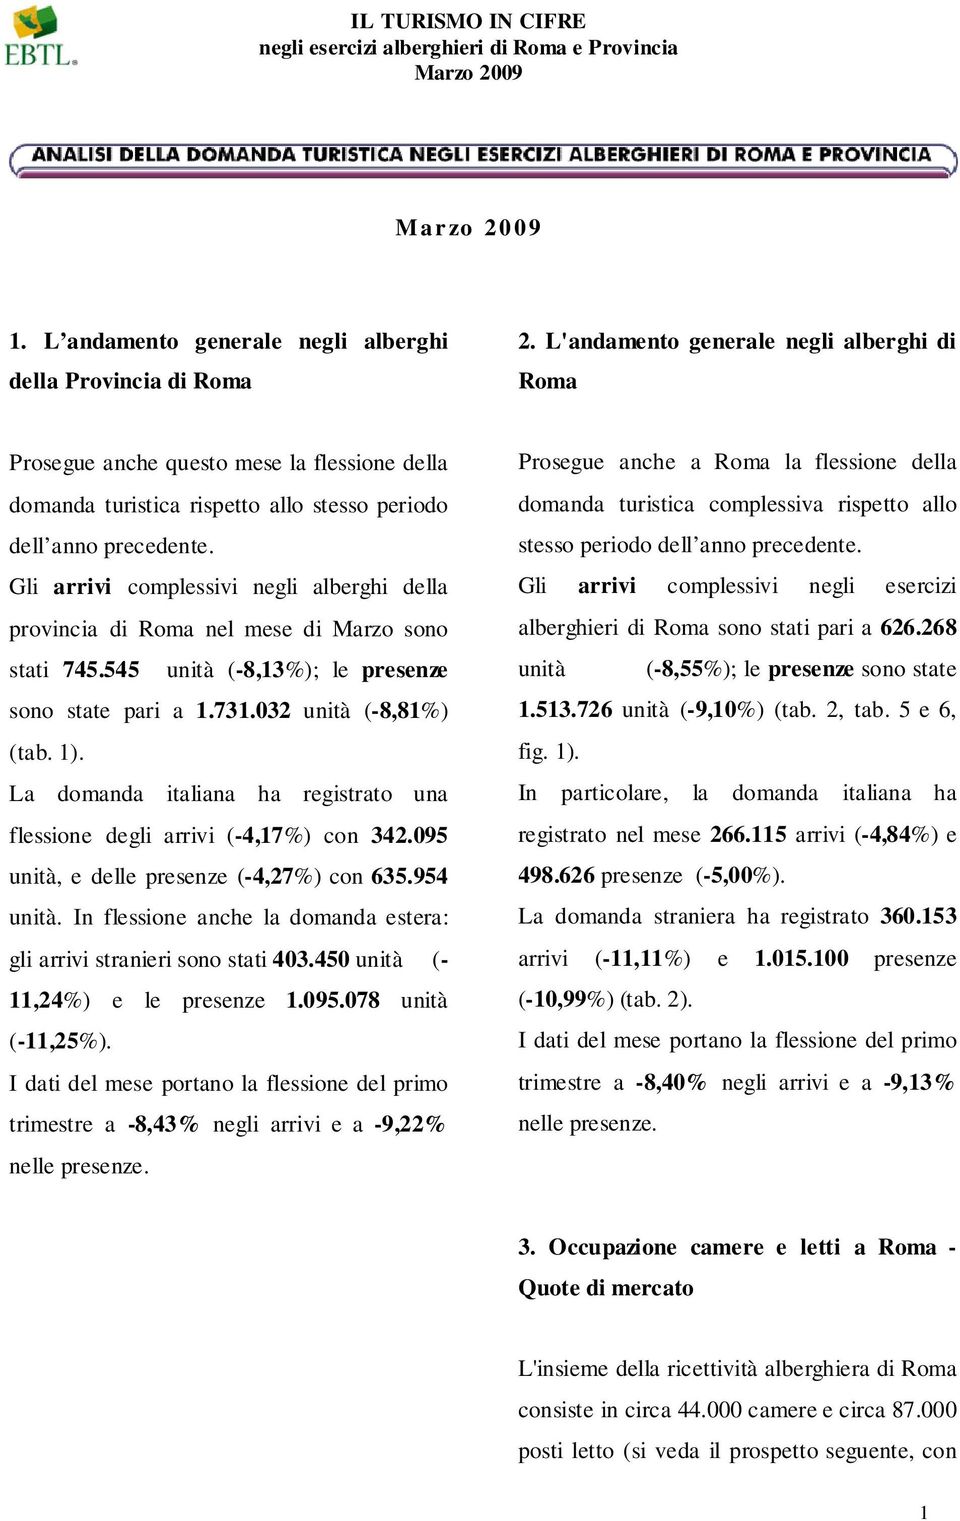 Gli arrivi complessivi negli alberghi della provincia di Roma nel mese di Marzo sono stati 745.545 unità (-8,13%); le presenze sono state pari a 1.731.032 unità (-8,81%) (tab. 1).